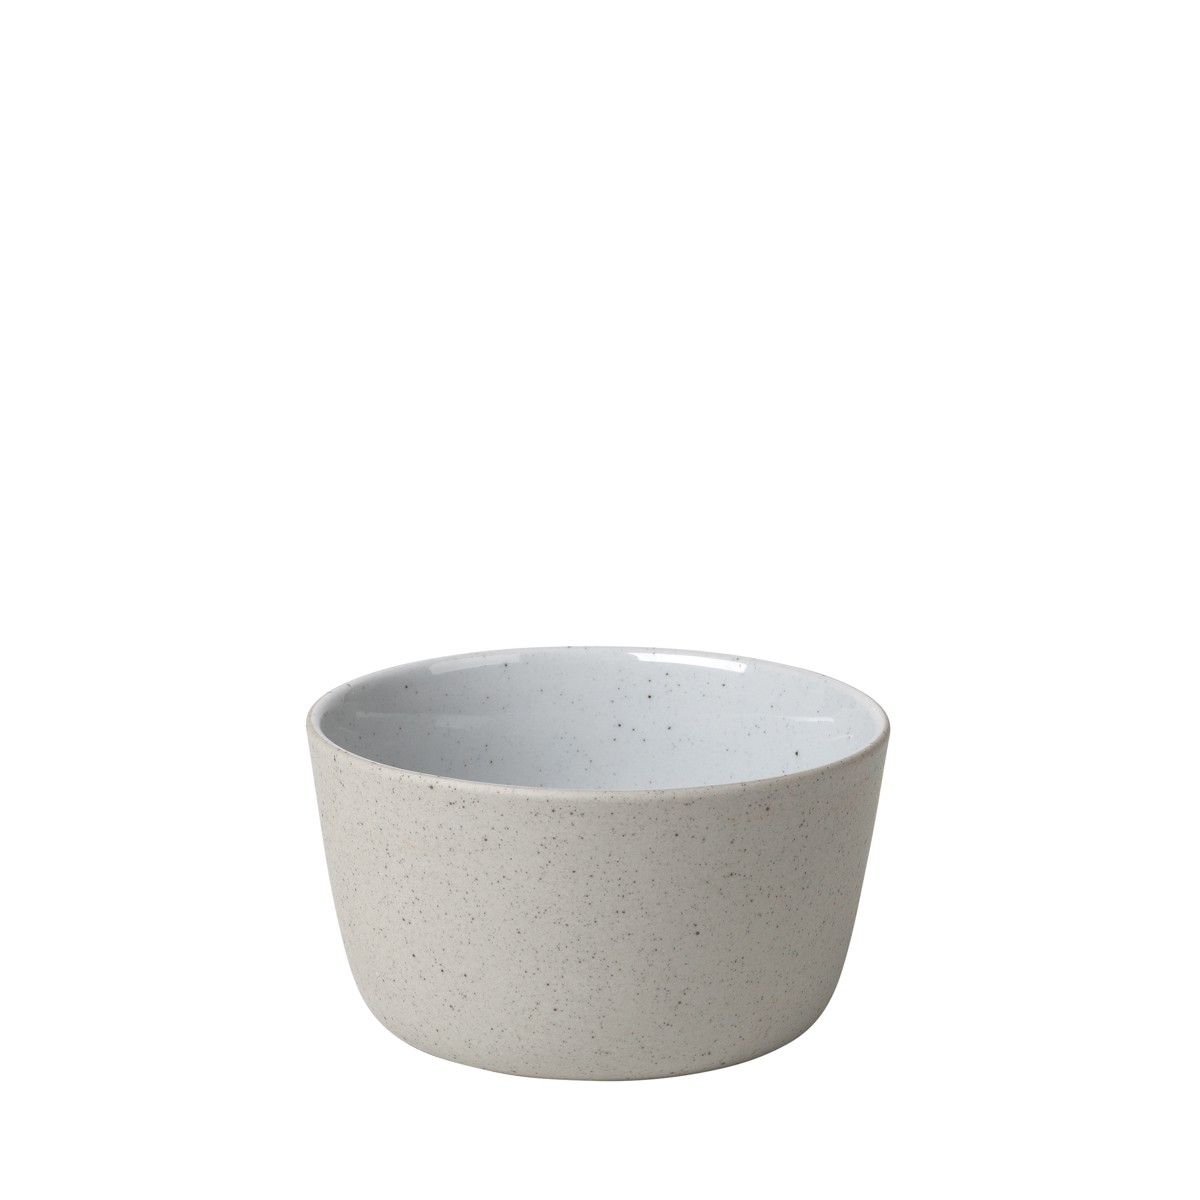 Schale -SABLO- Cloud Size S, Ø 11 cm. Material: Keramik. Von Blomus.